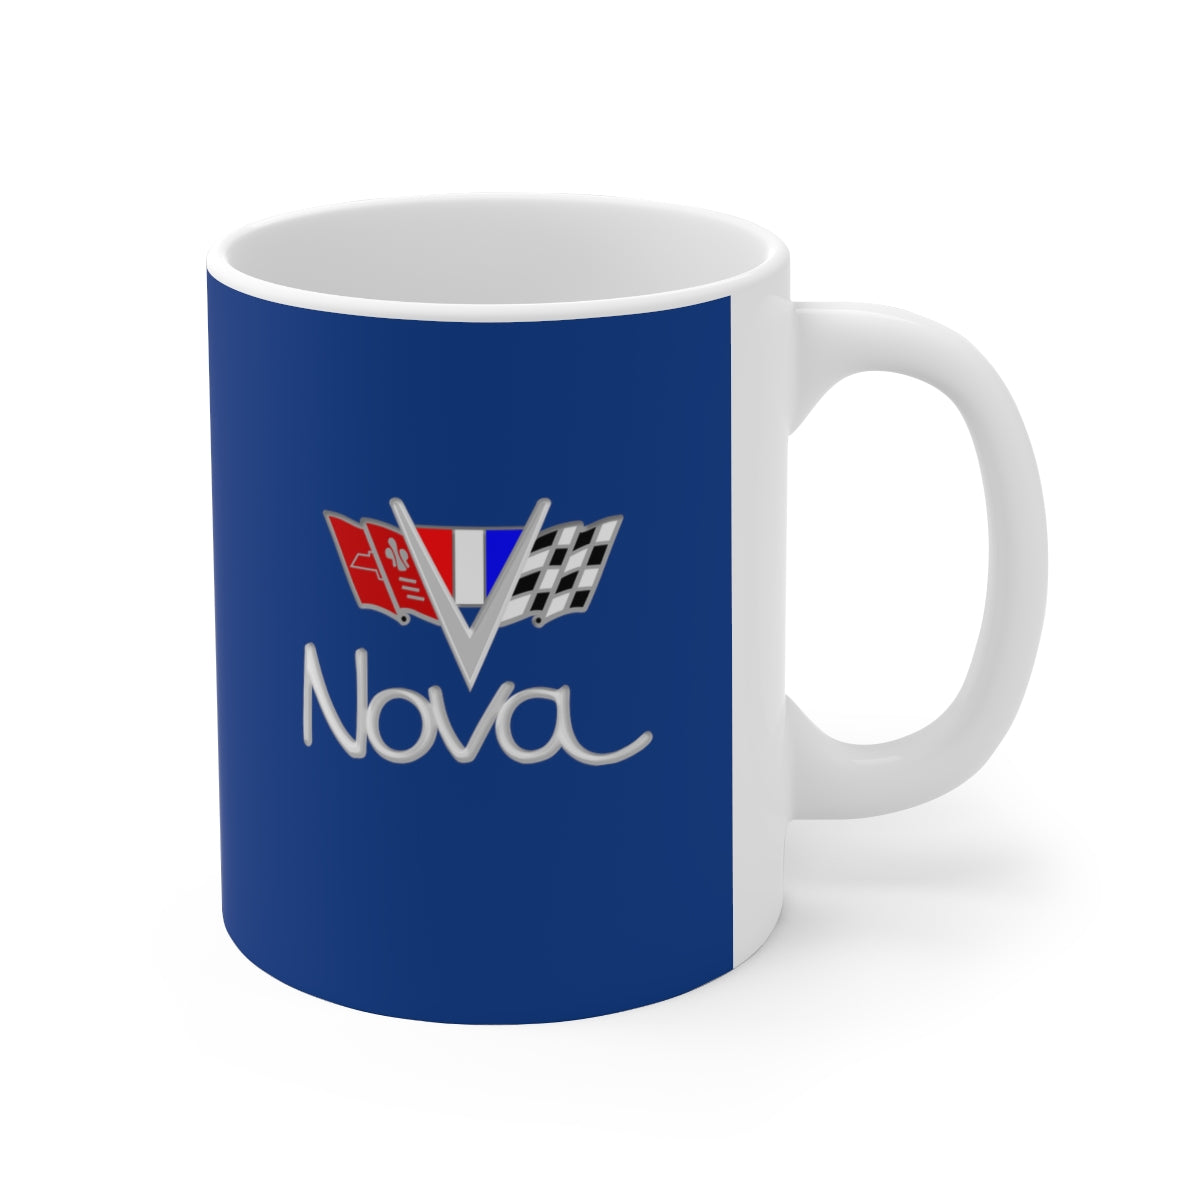 Nova Ceramic Mug 11oz - Chevy